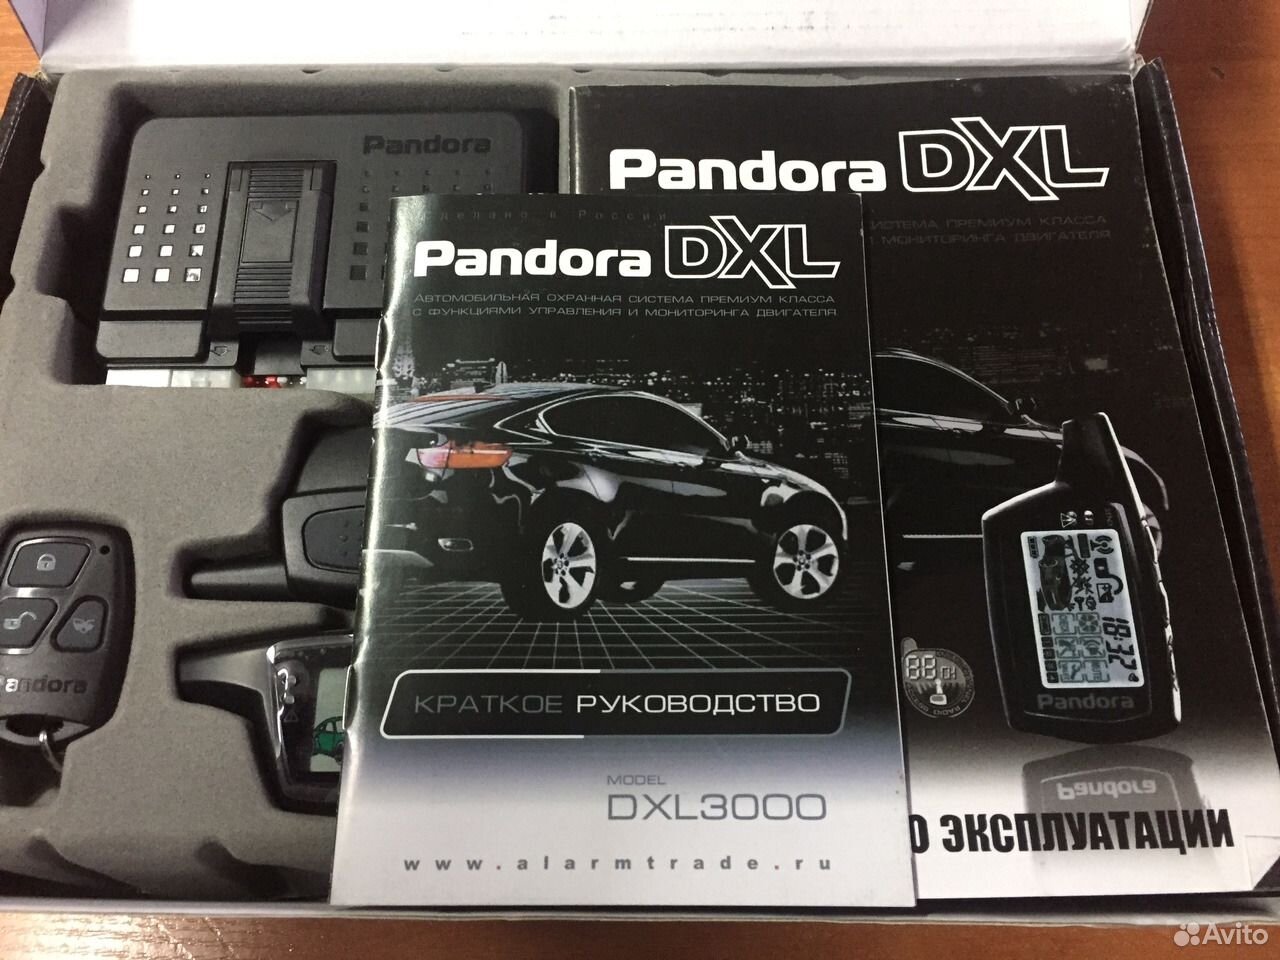 Pandora dxl 3000. Автосигнализация Пандора DXL 3000. Блок pandora DXL 3000. Pandora DXL 600/605. Pandora DXL 9310.